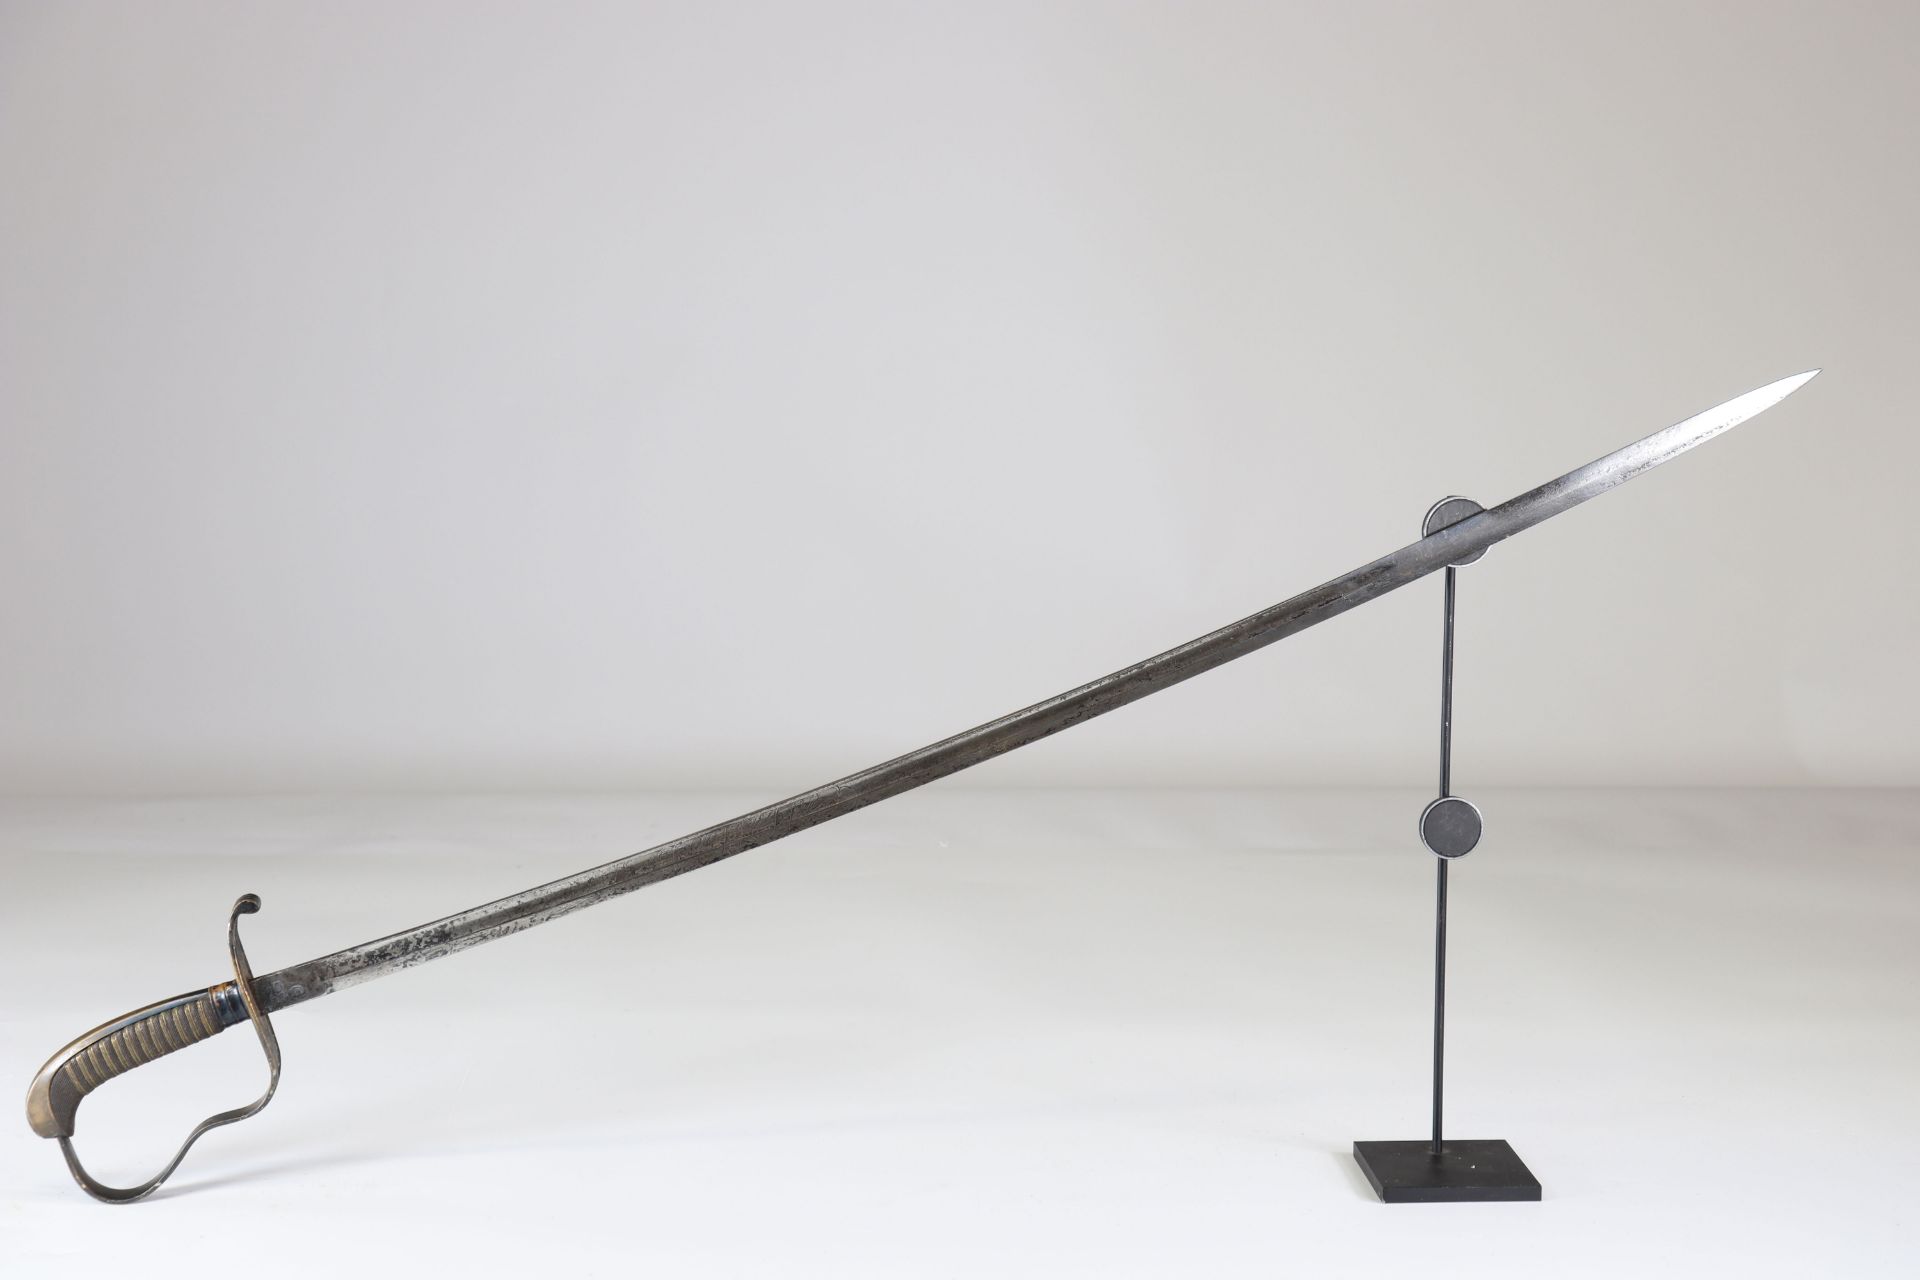 German officer's saber 1914-1918 engraved blade,